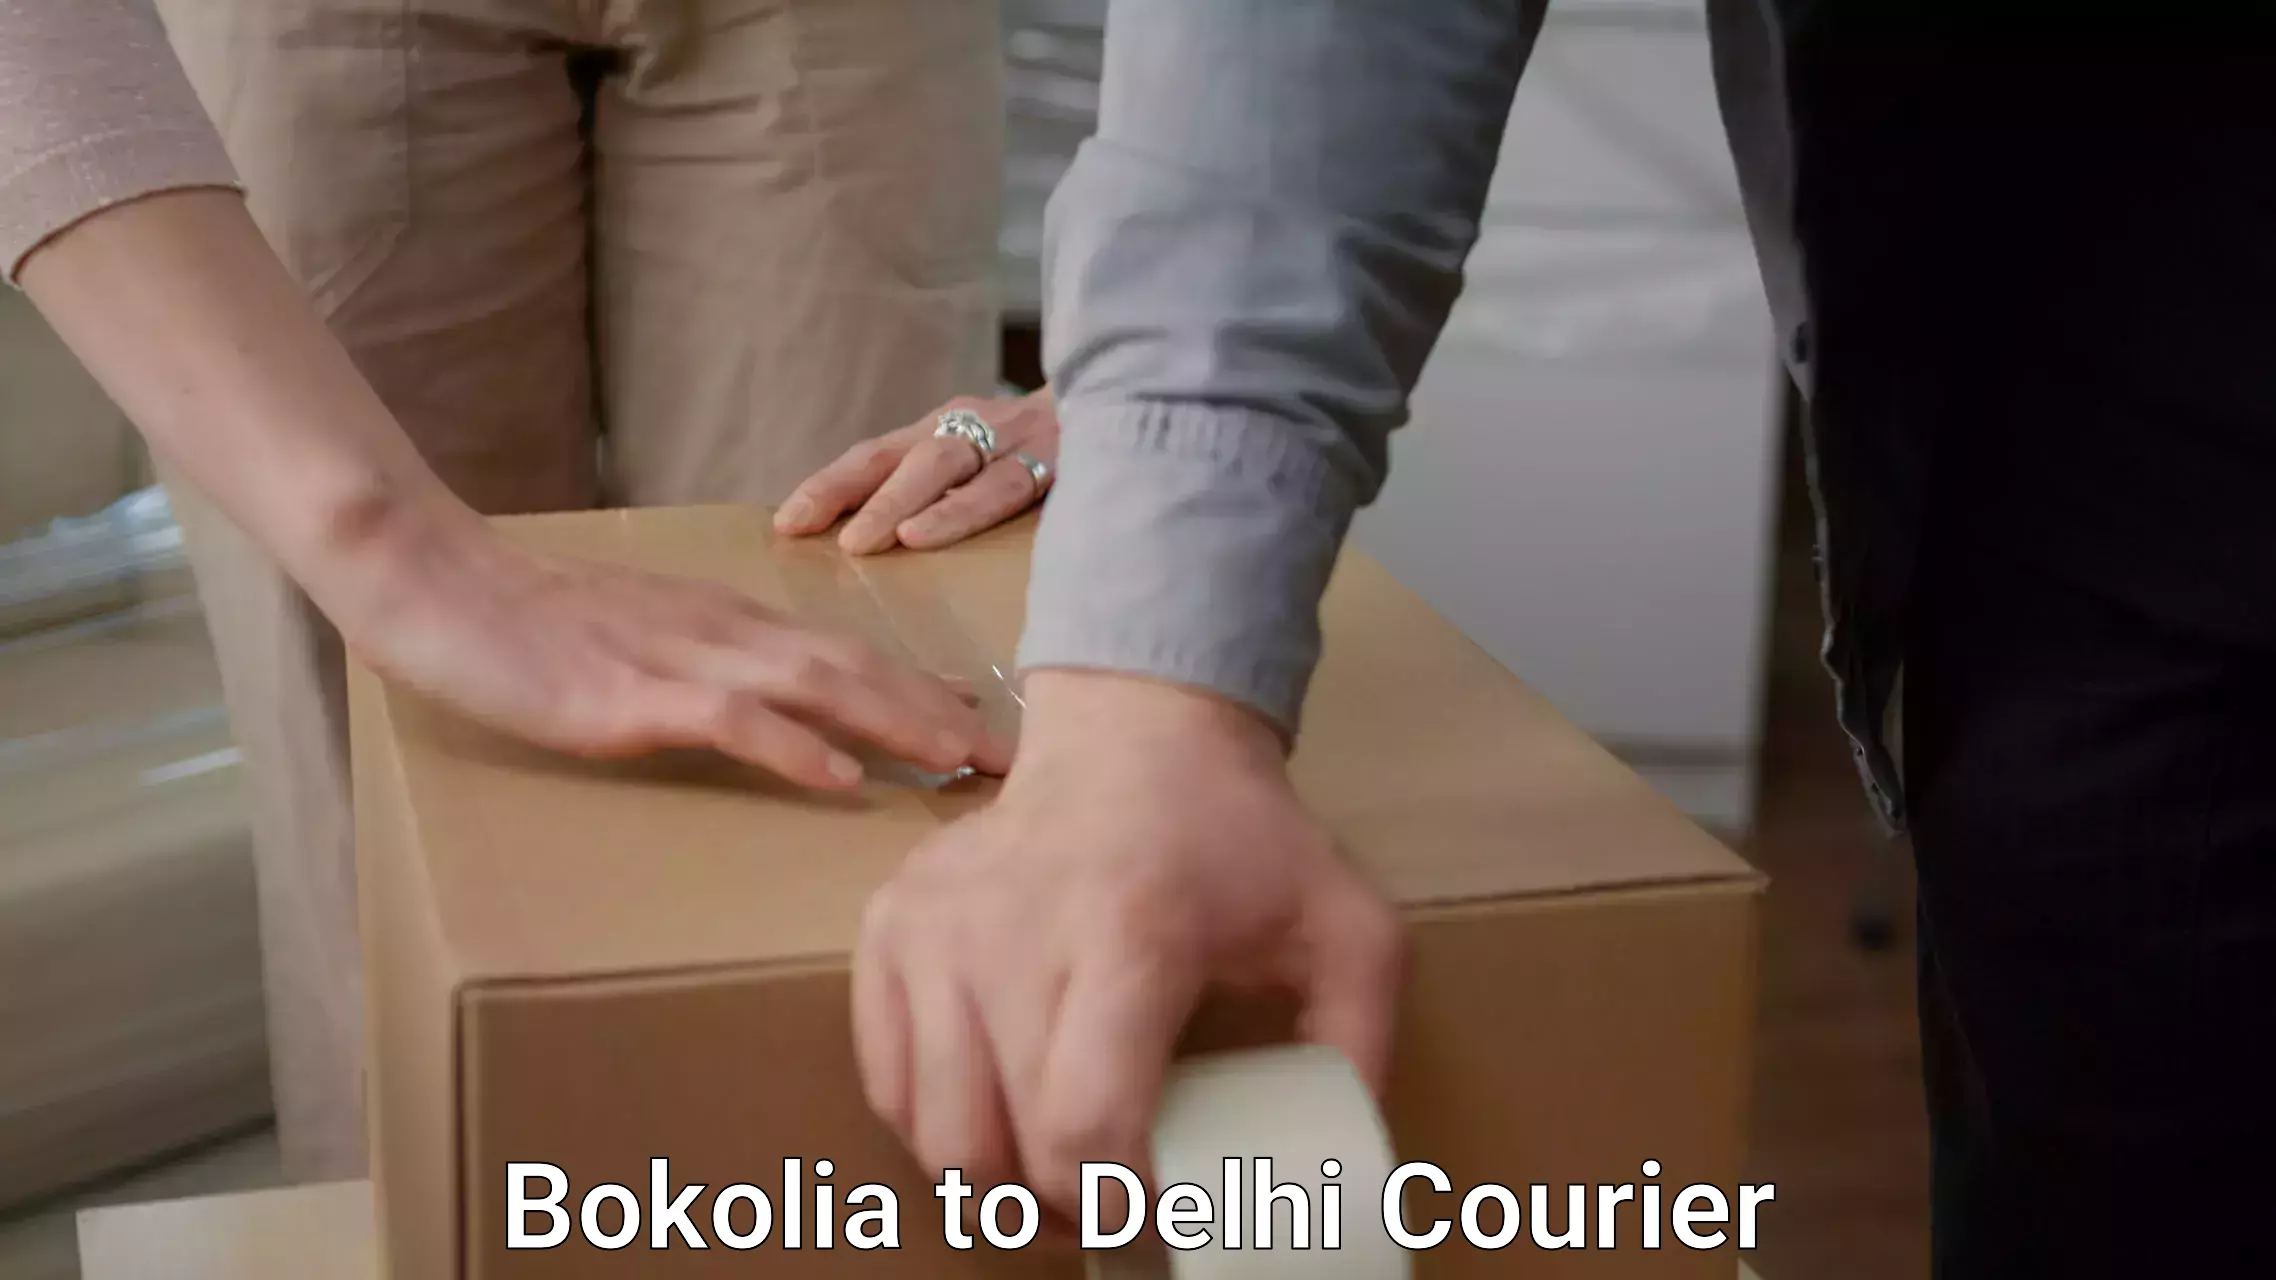 Professional movers Bokolia to Delhi